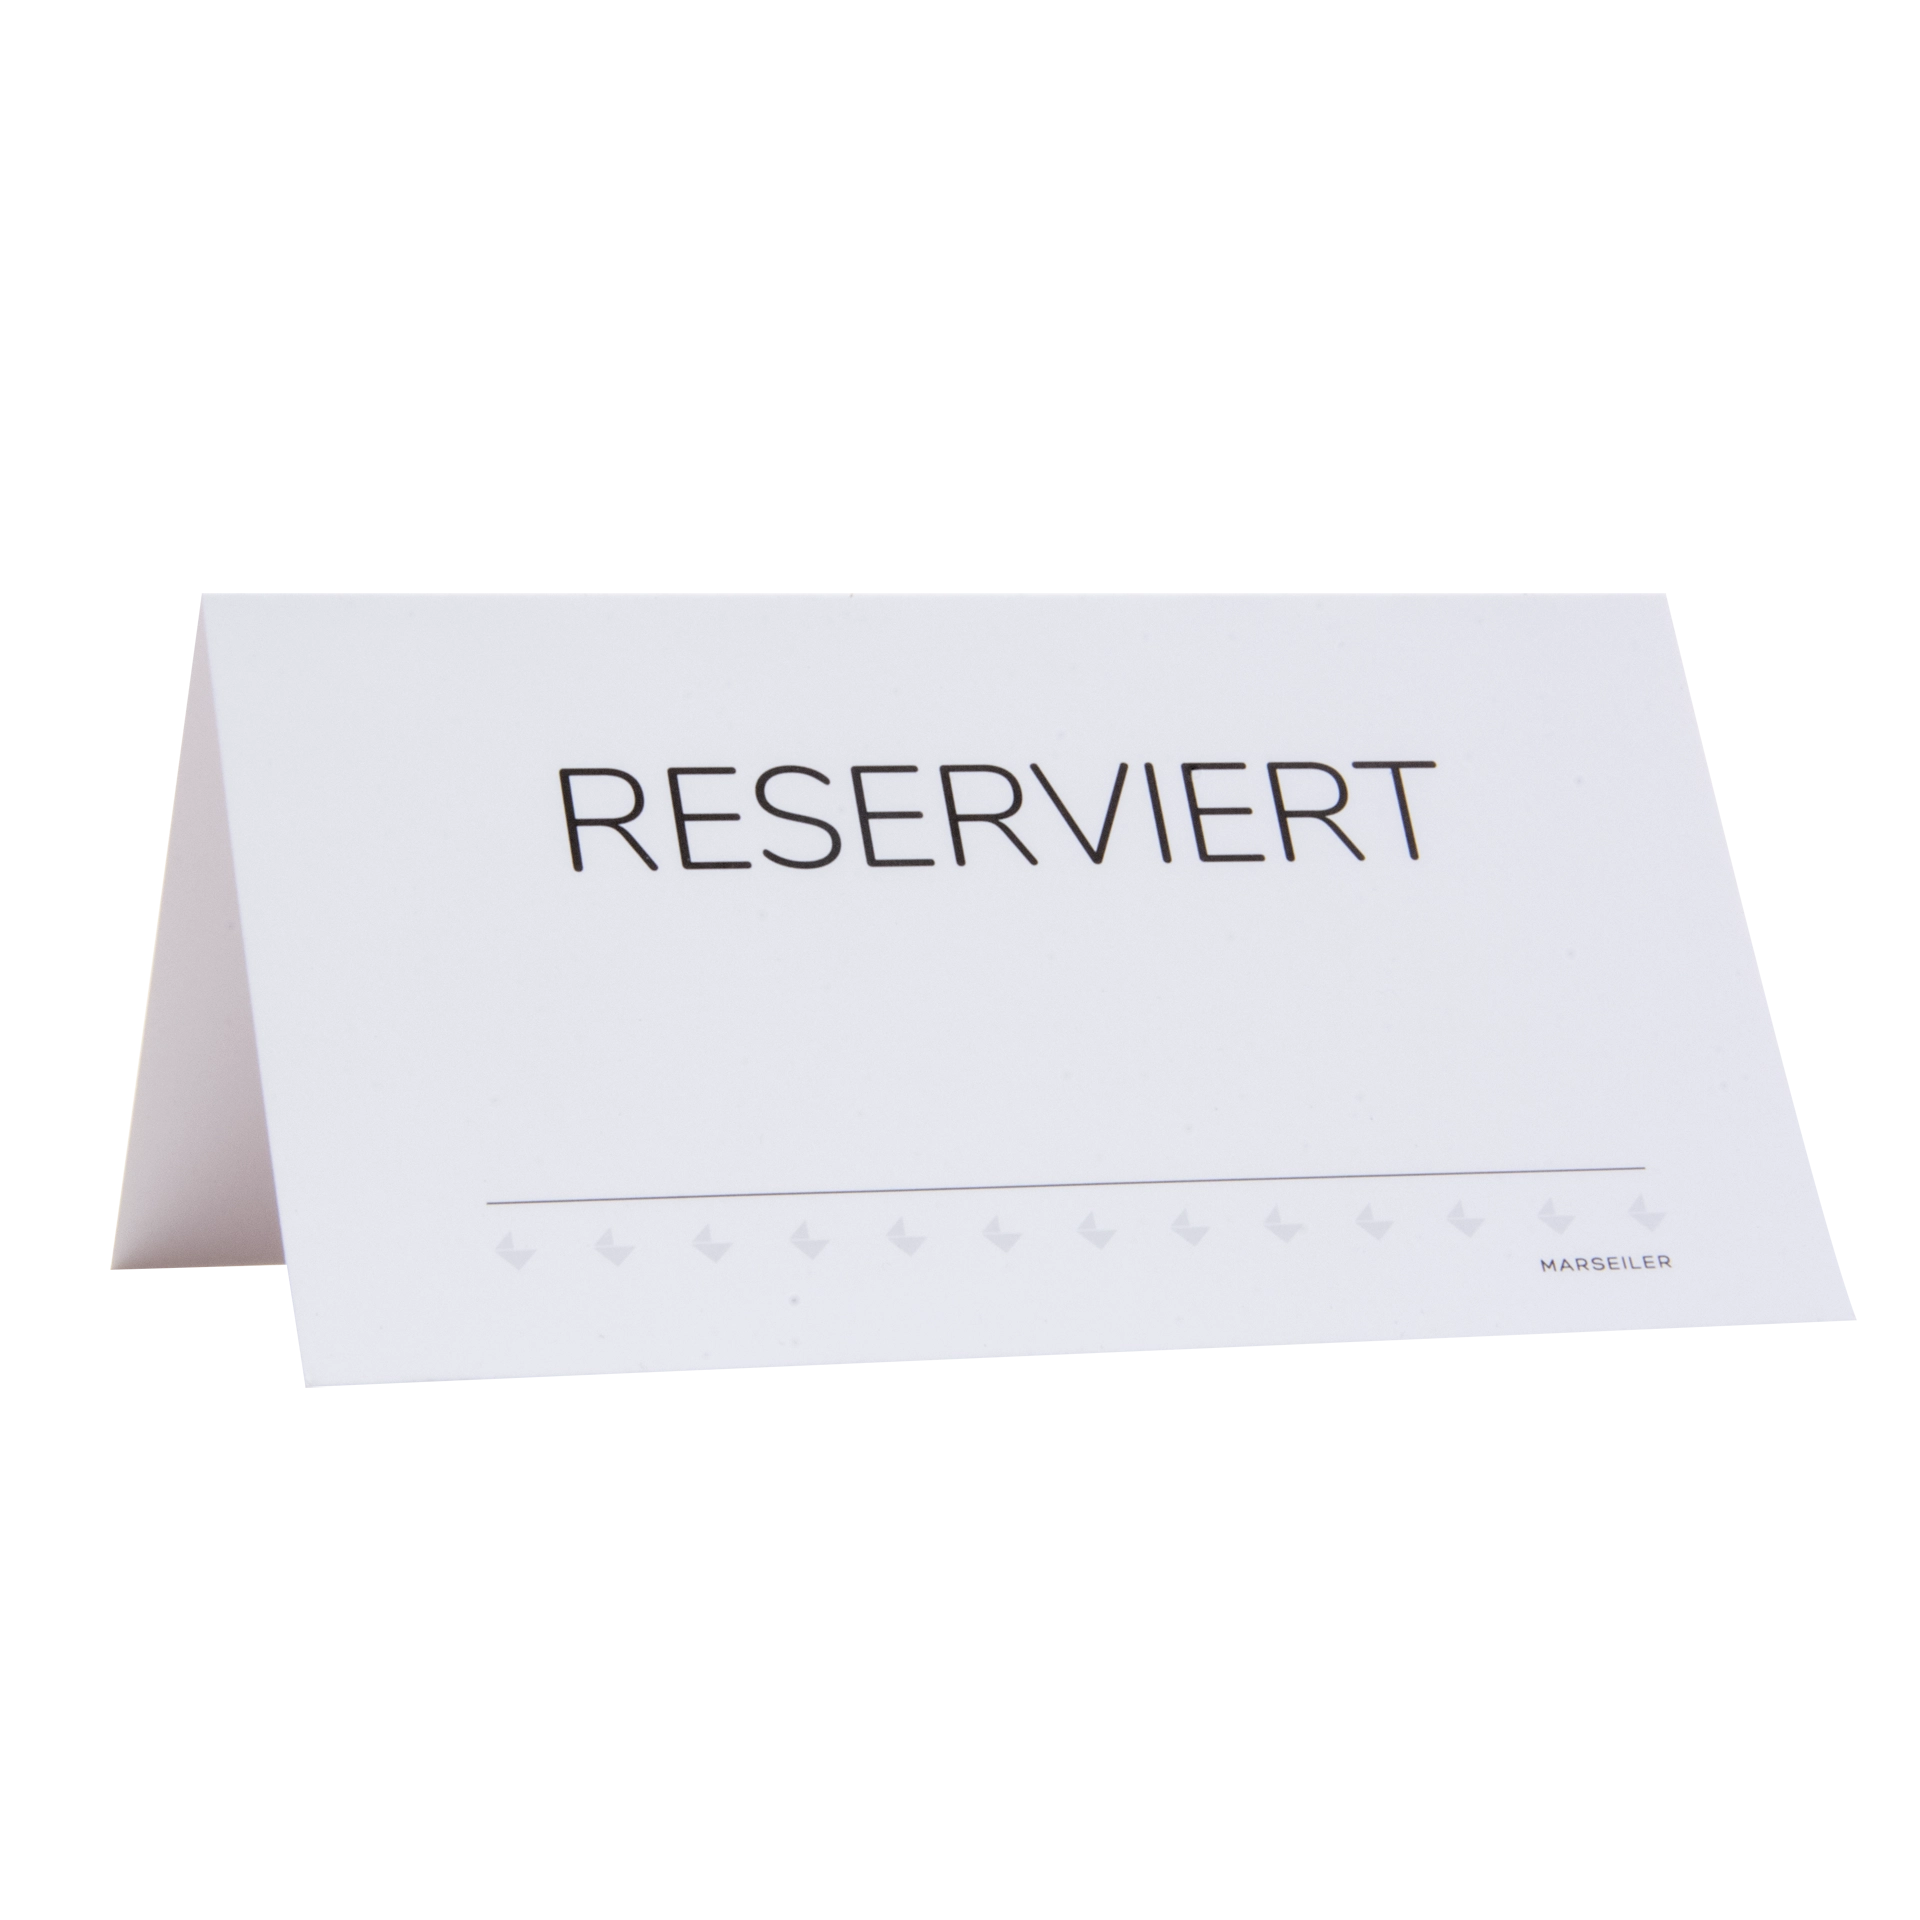 Reserviertkarte | 'Reserviert/Riservato' Karton 300 g/m² | weiß 12x6,5 cm